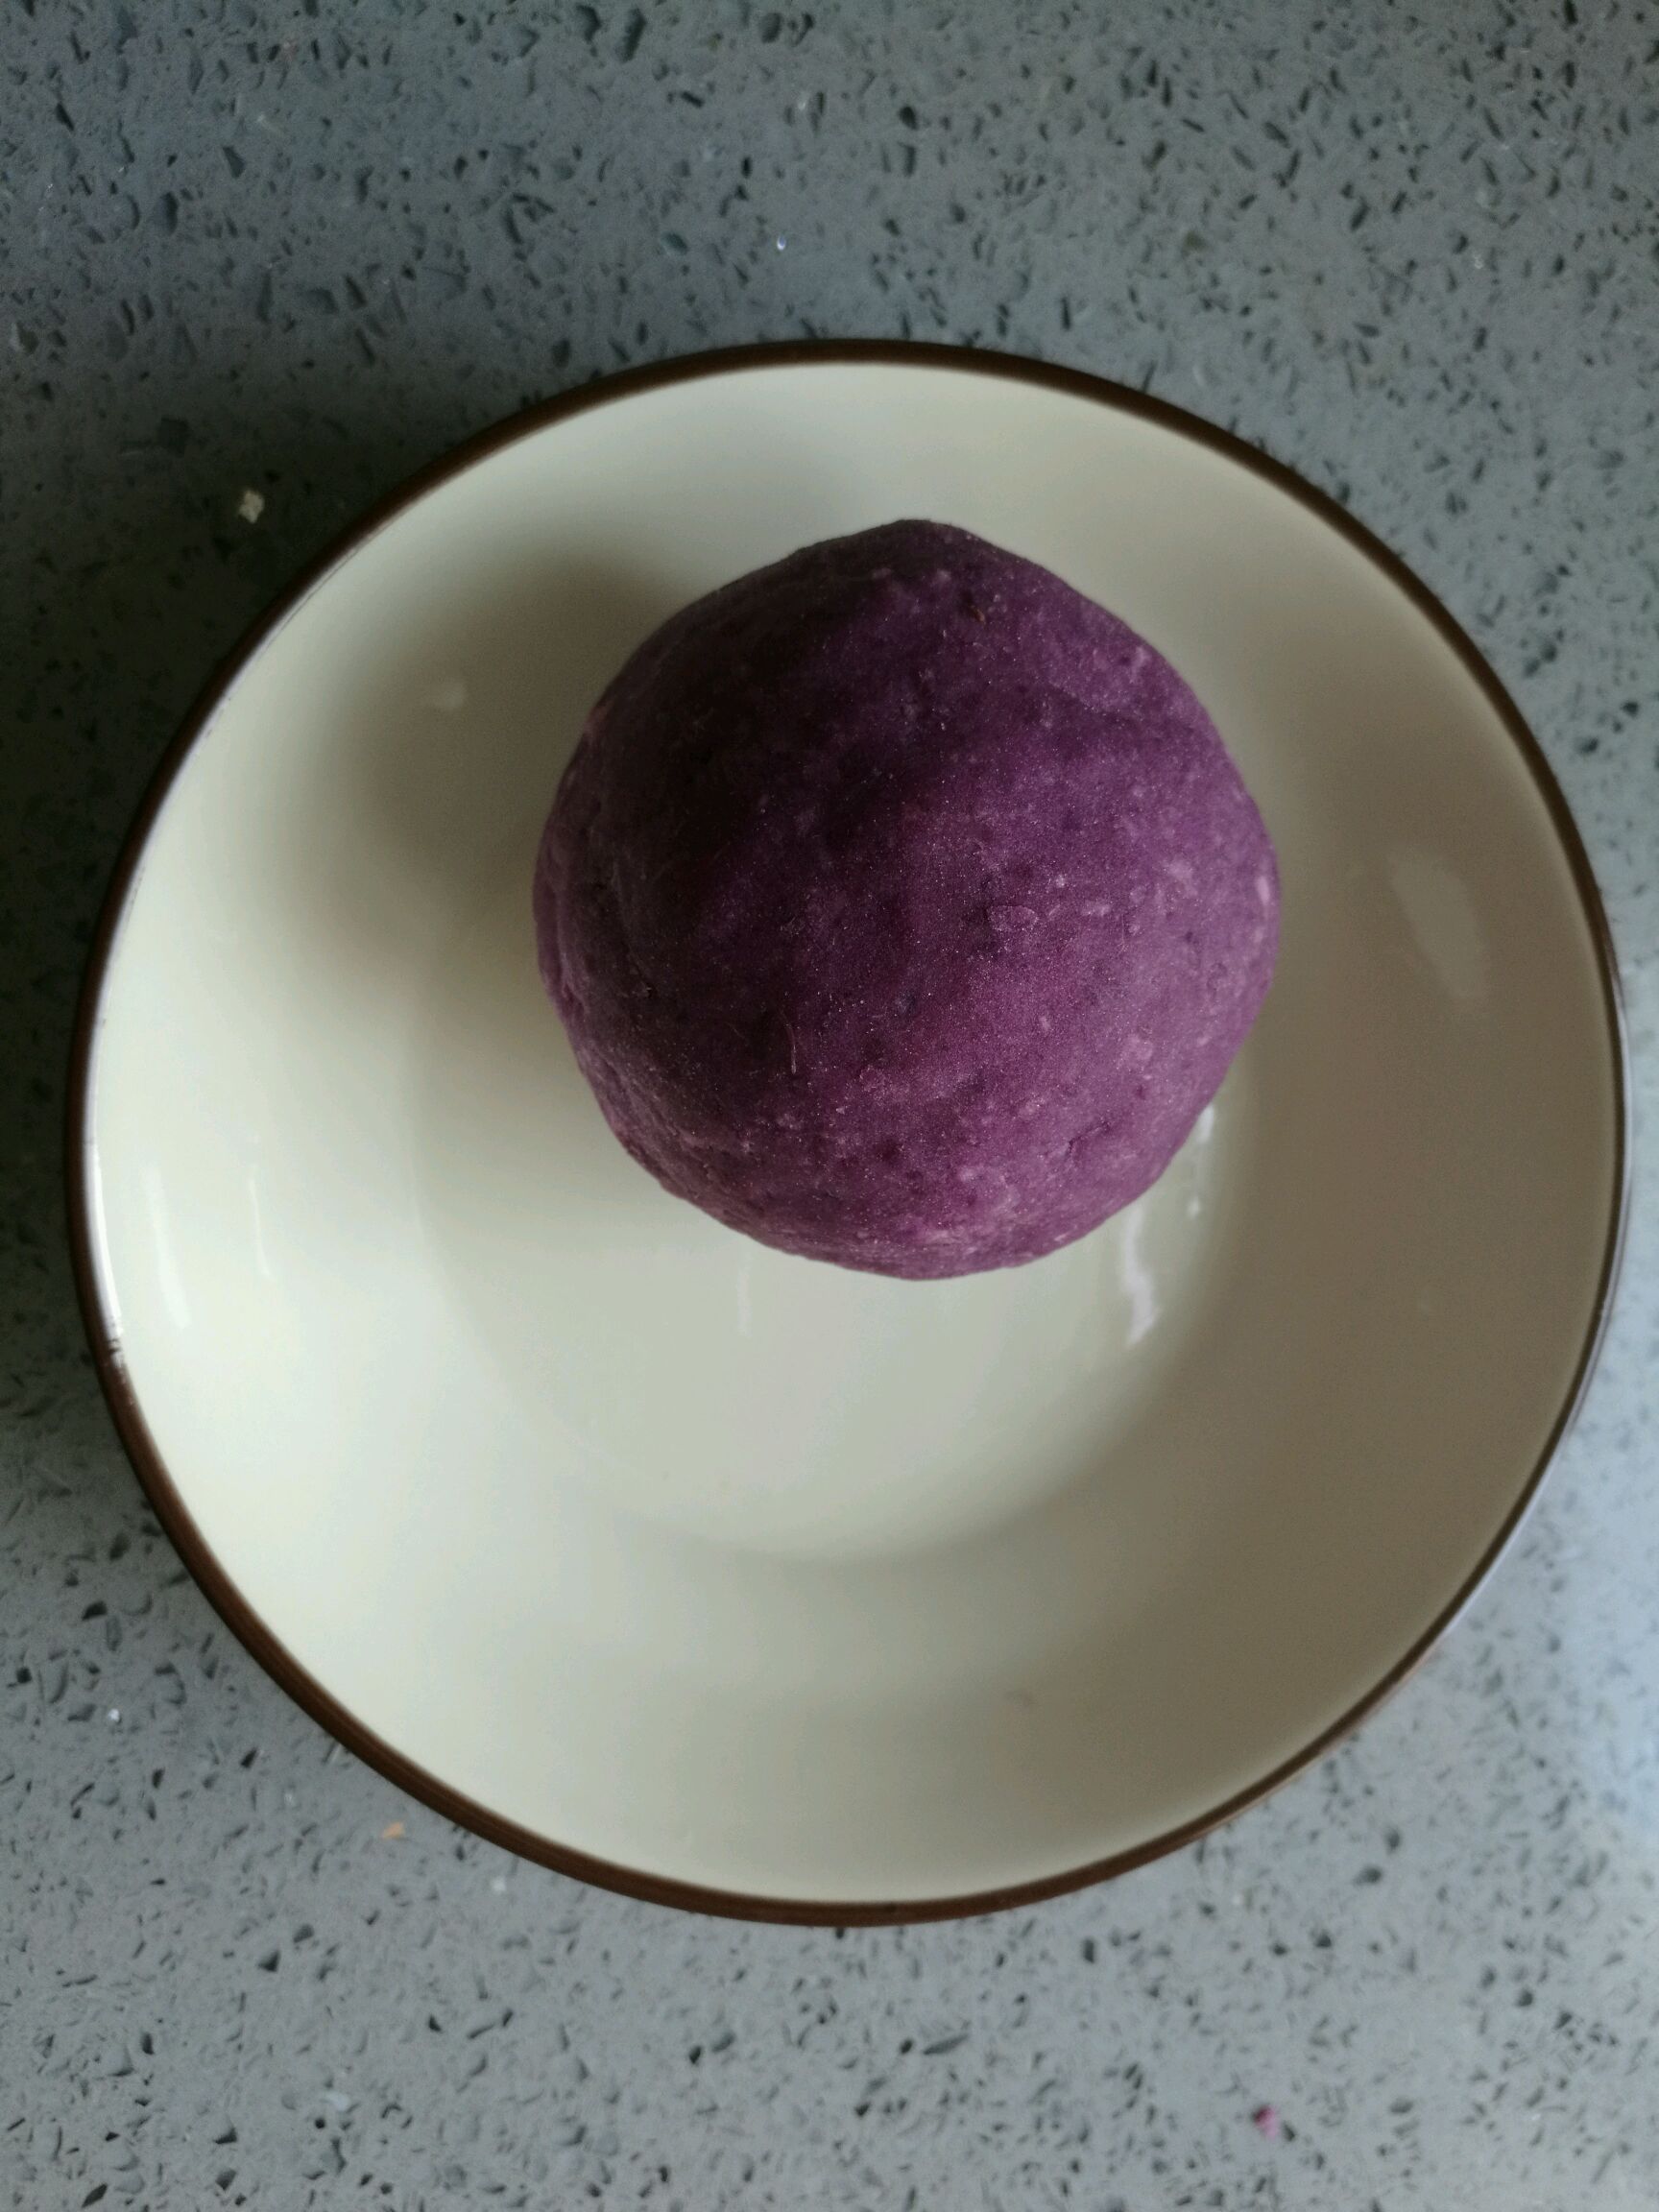 水晶南瓜紫薯包怎么做_水晶南瓜紫薯包的做法_月色家的小厨房_豆果美食